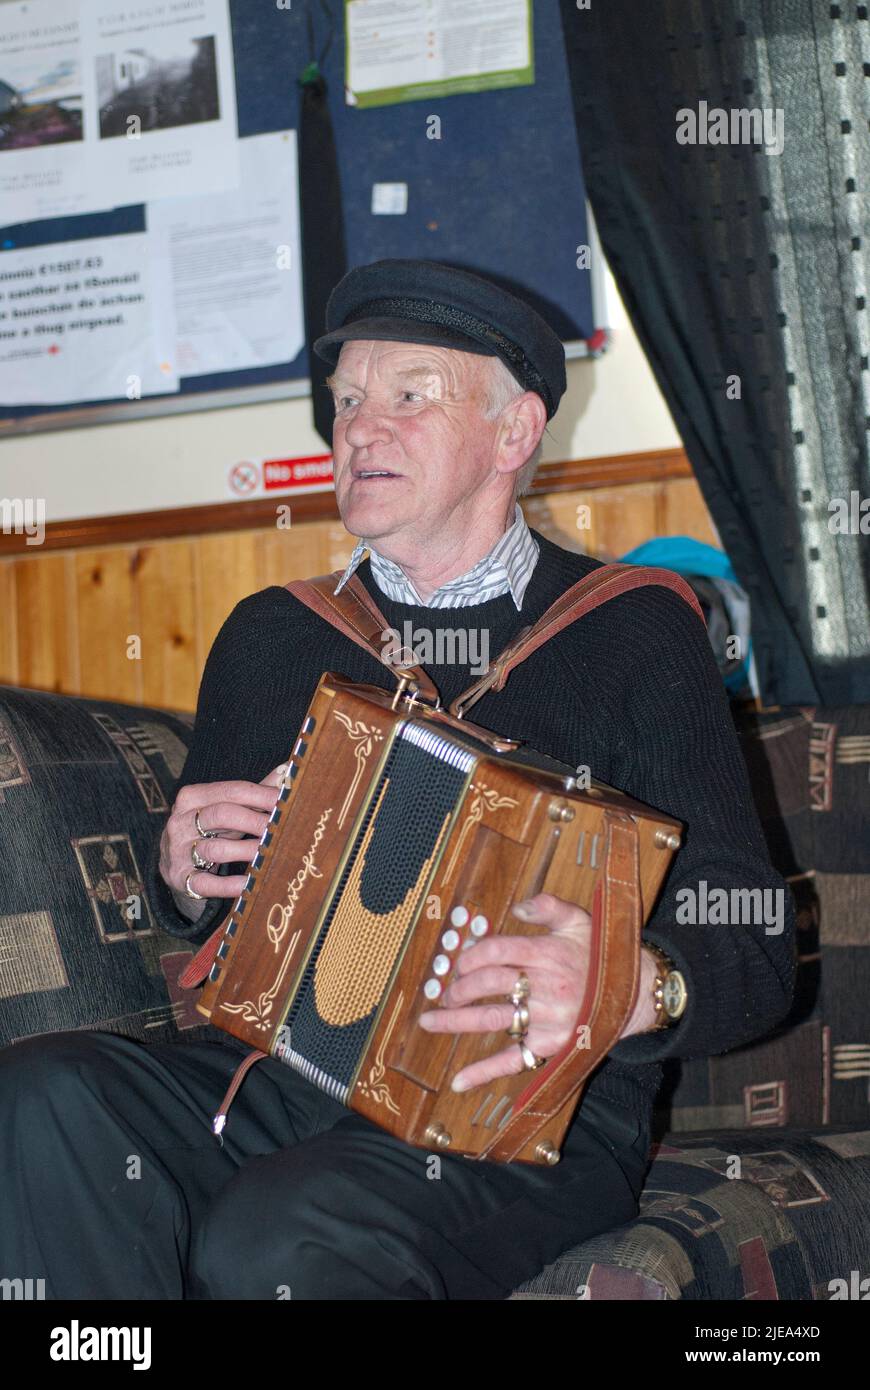 Patsy Dan Rodgers (1944-2018, rey de la isla Tory desde 1990 hasta 2018) jugando su acordeón, isla Tory, condado de Donegal, Irlanda Foto de stock